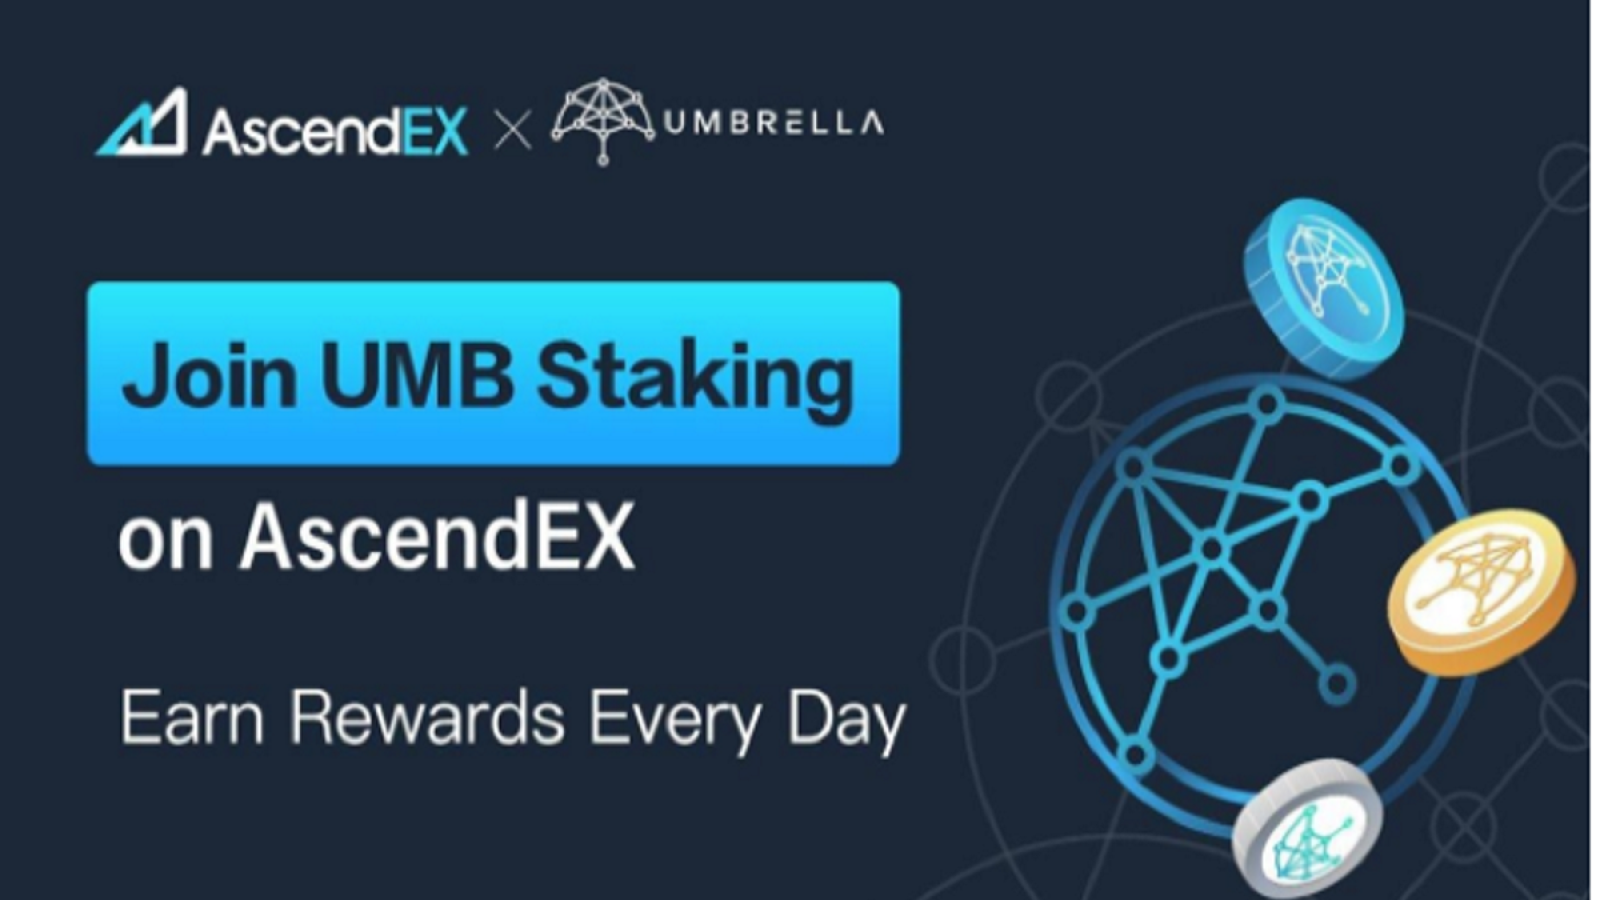 UMB Staking on AscendEX